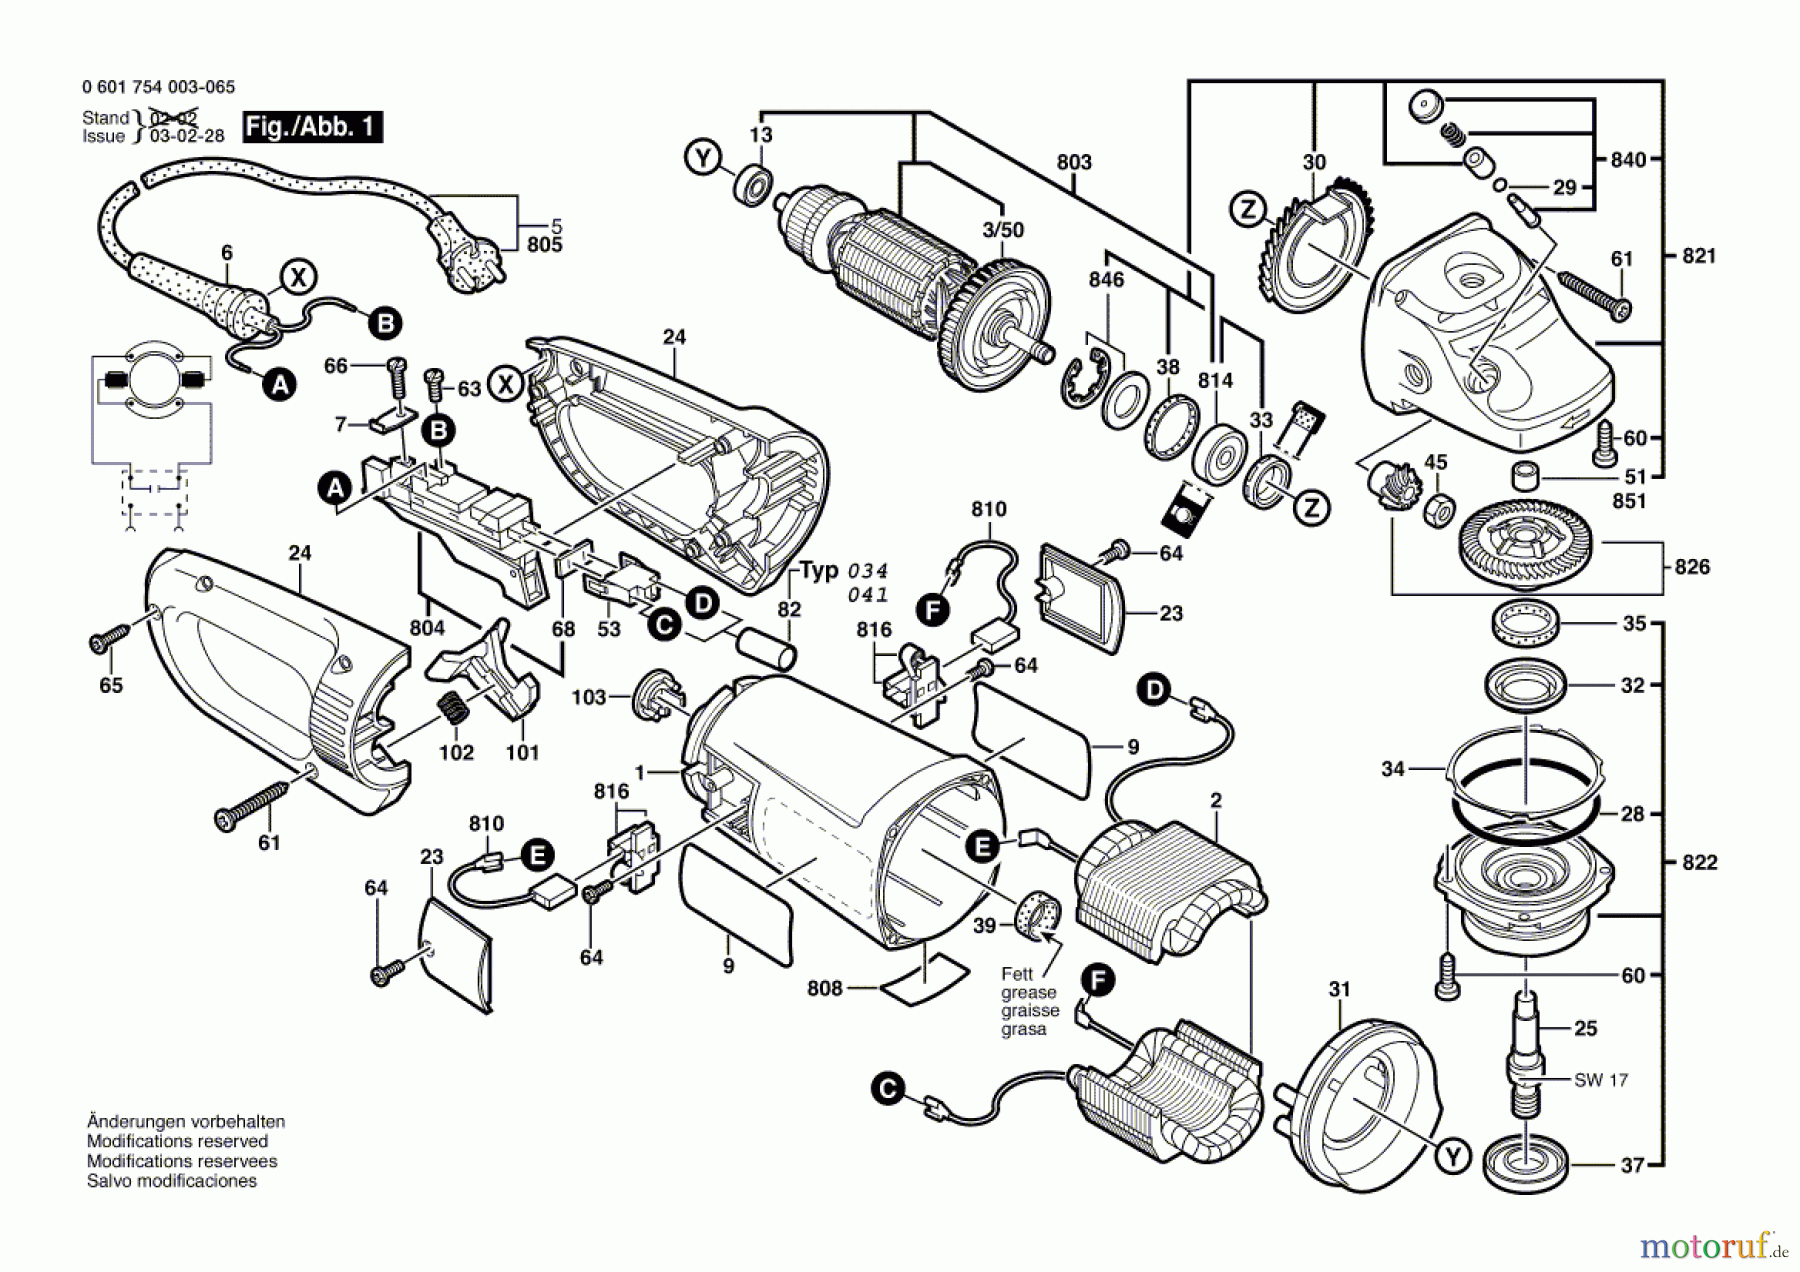  Bosch Werkzeug Winkelschleifer GWS 23-230 Seite 1